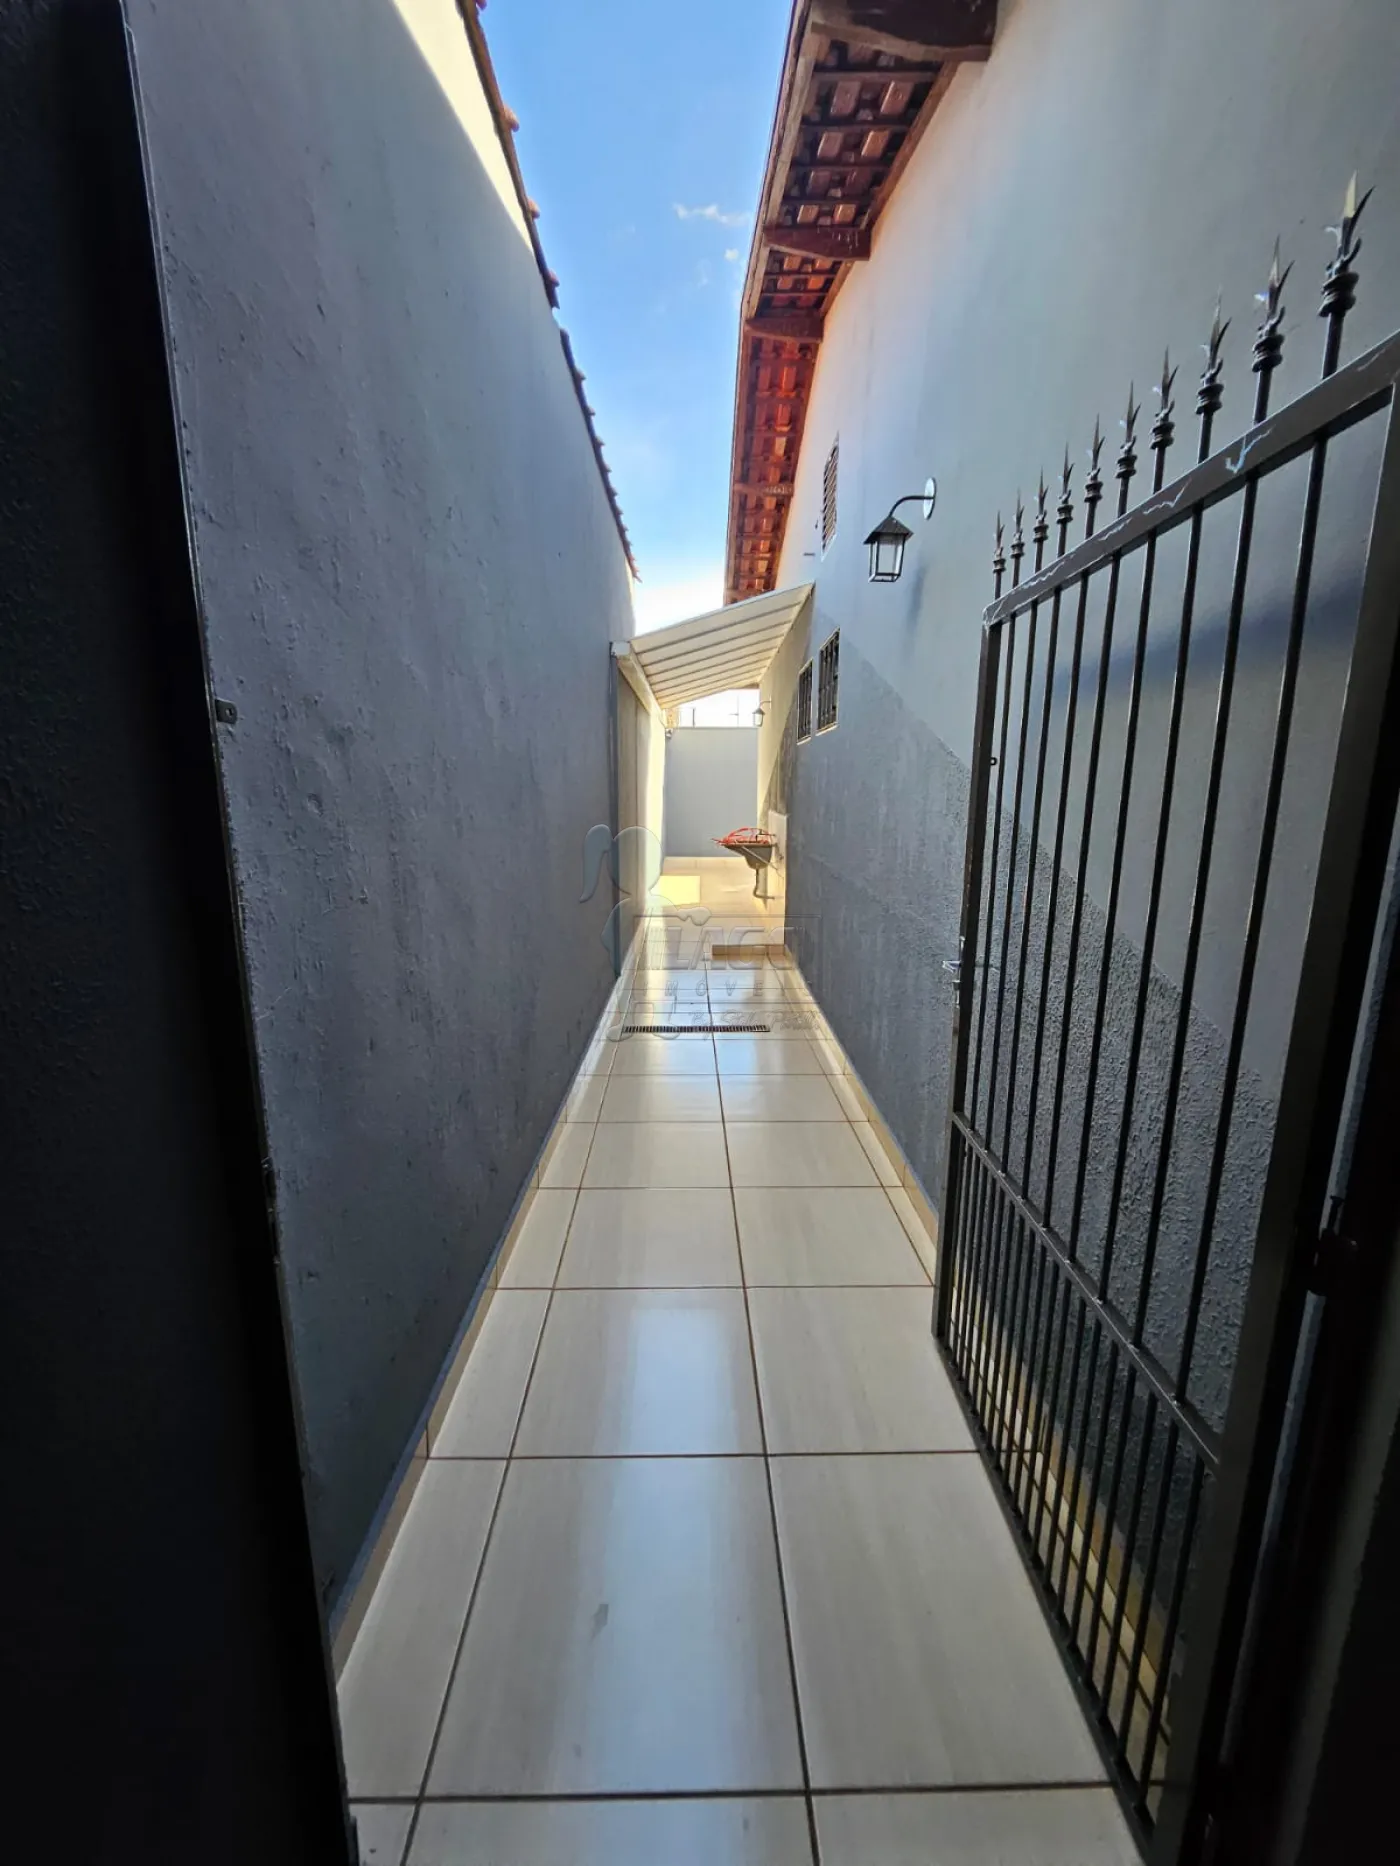 Comprar Casa / Padrão em Ribeirão Preto R$ 275.000,00 - Foto 13